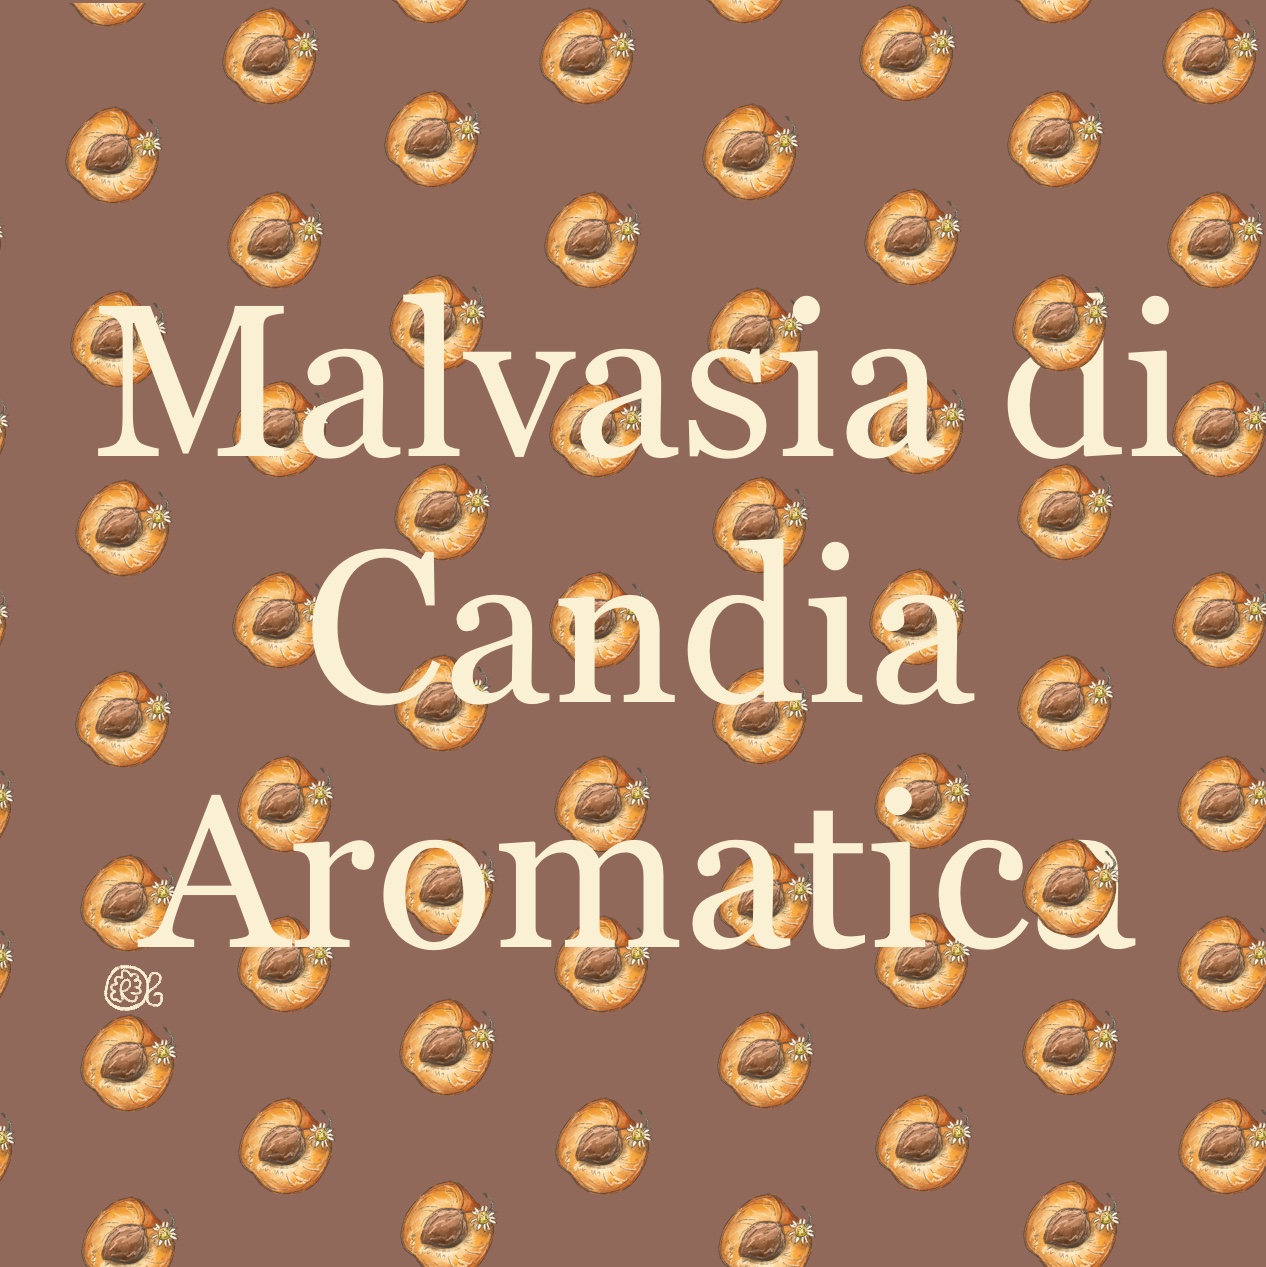 Malvasia di Candia Aromatica